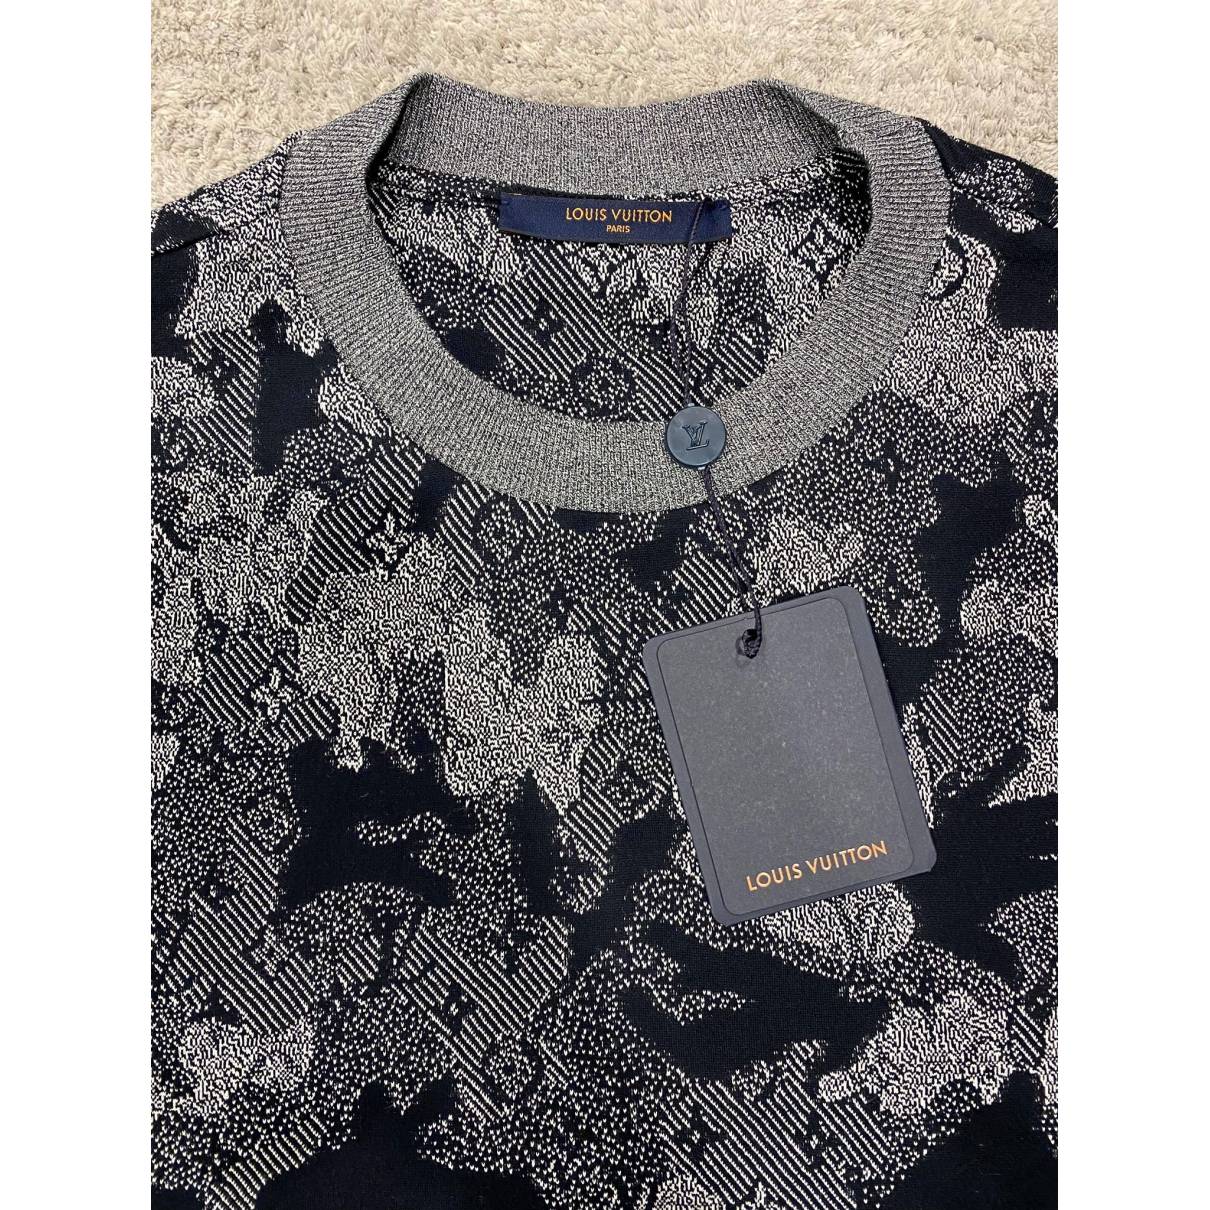 Sweatshirt Louis Vuitton Grey size M International in Cotton - 31899501